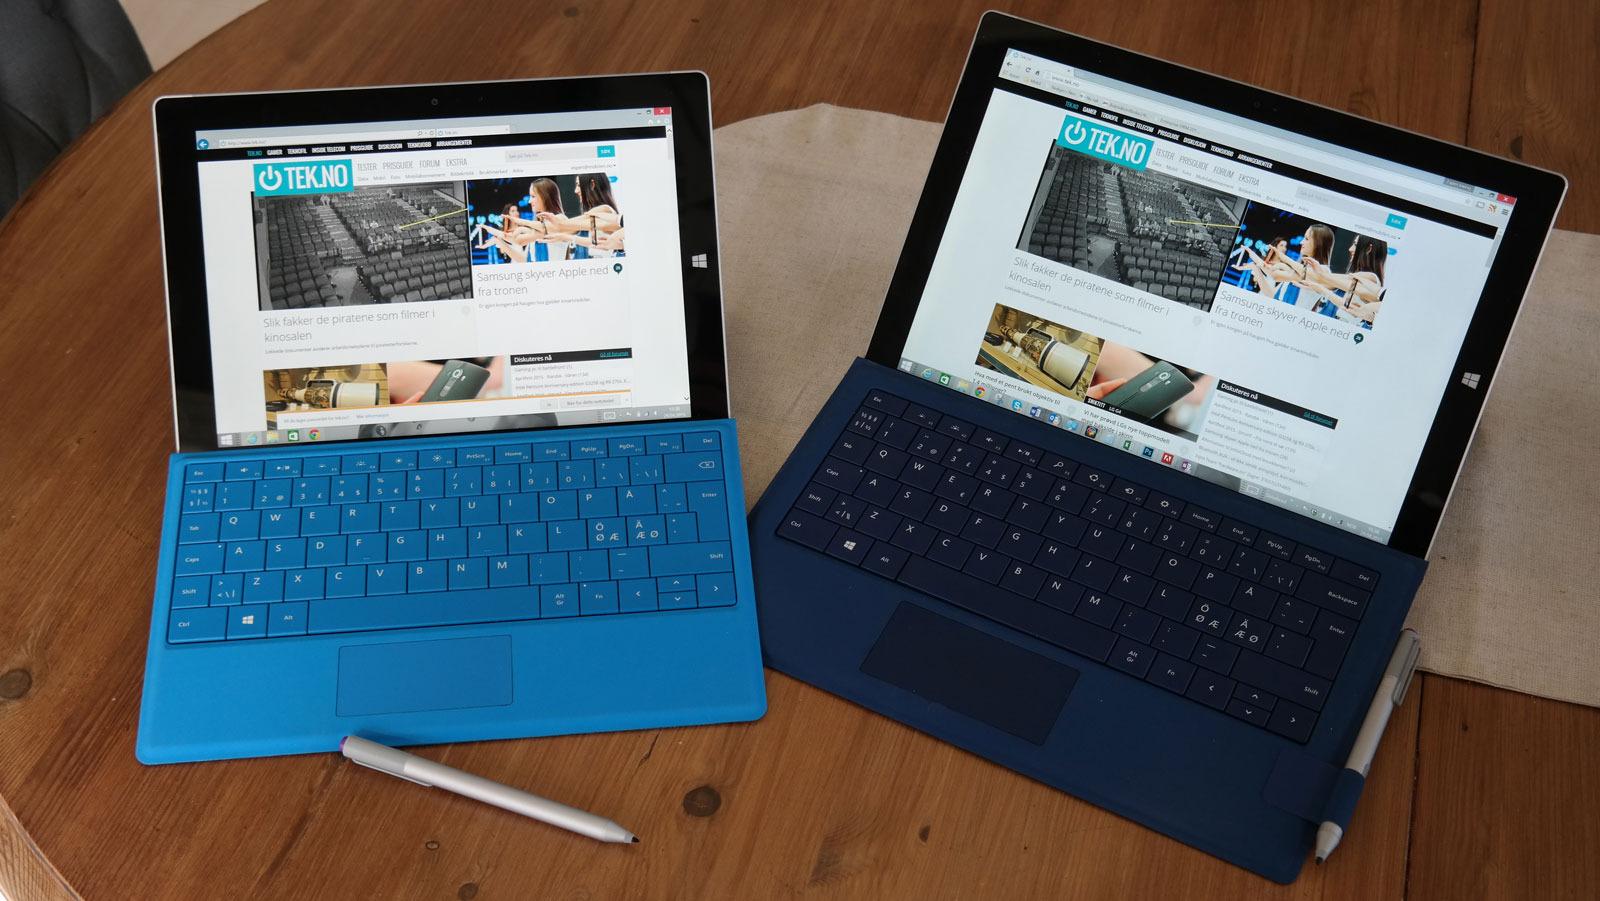 Surface 3 til venstre, Surface Pro 3 til høyre. Denne artikkelen ble til på den minste av de to.